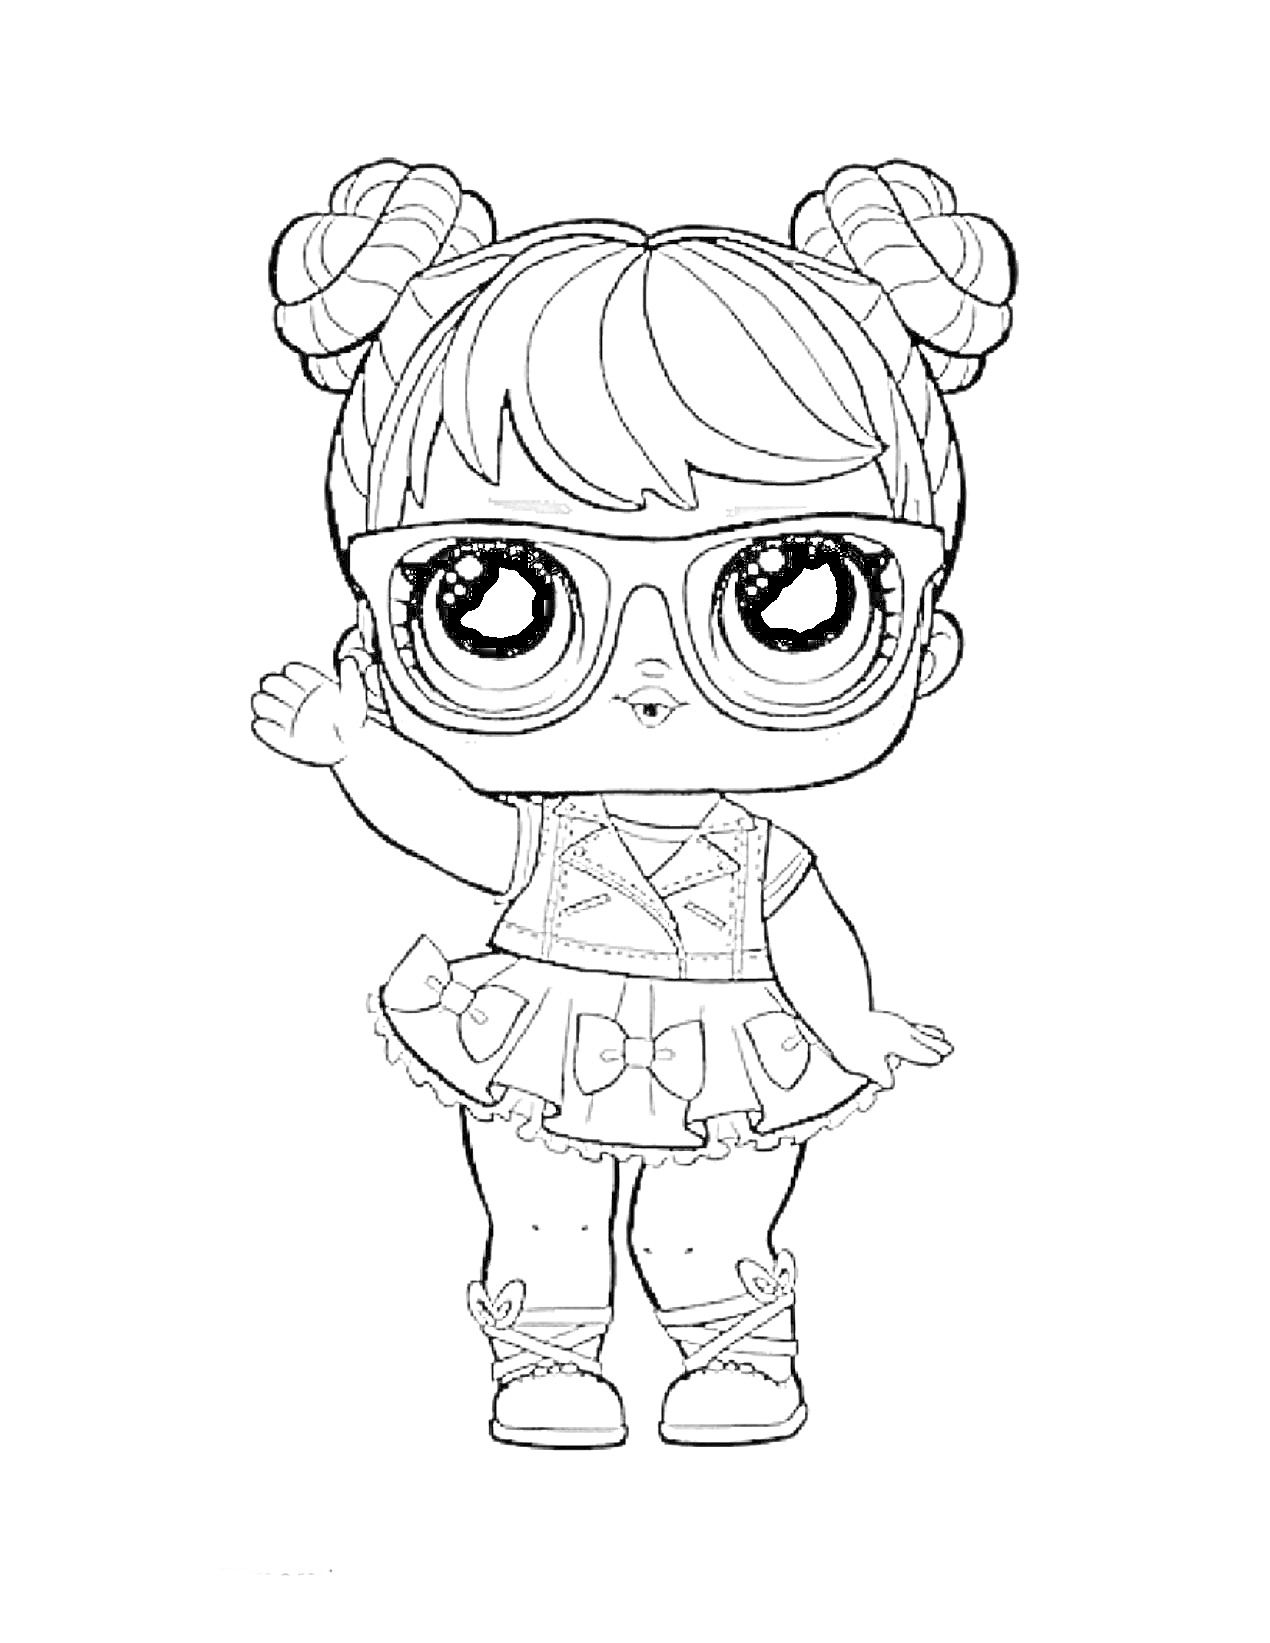 Раскраска Кукла Лол в очках с двумя пучками на голове, в платье с рюшами и бантиками, в босоножках